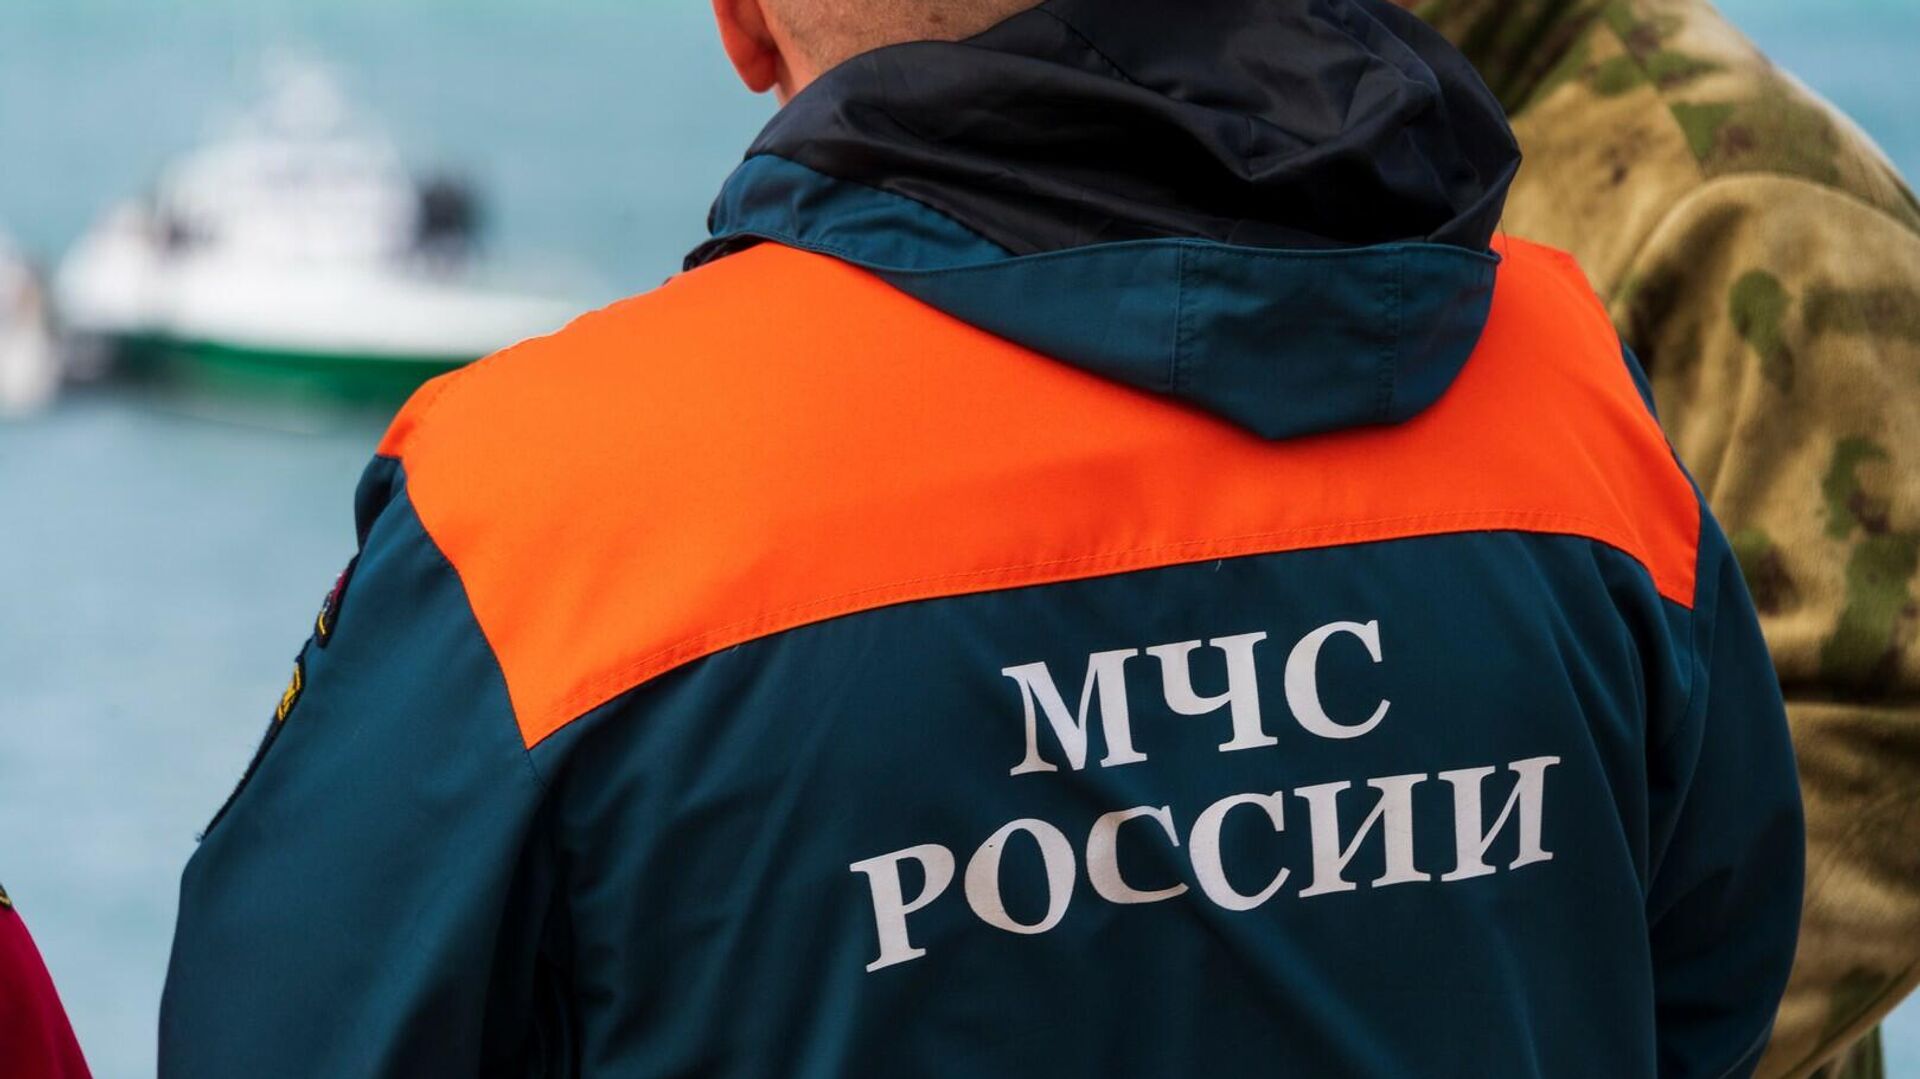 Появились подробности об упавшем в озеро российском гидросамолете